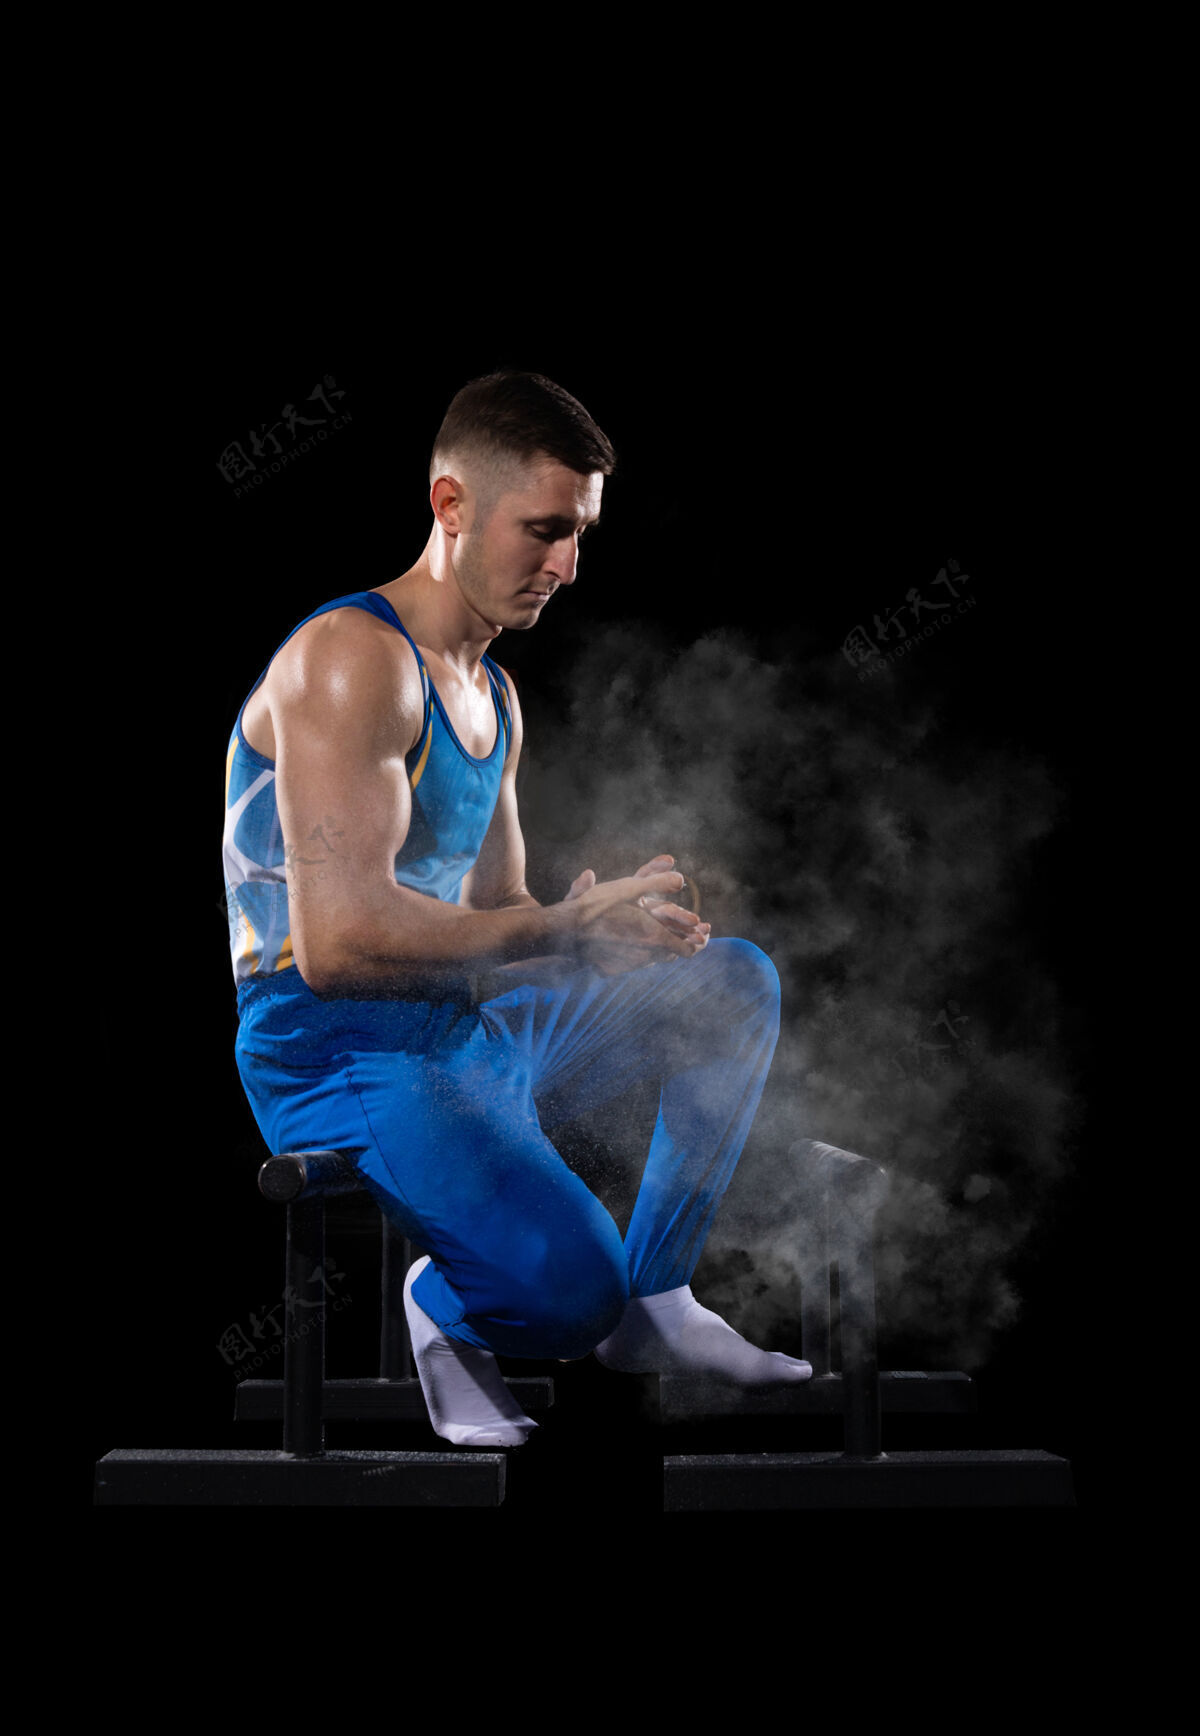 运动有经验肌肉发达的男体操运动员在健身房训练 灵活活跃动态体操杂技演员